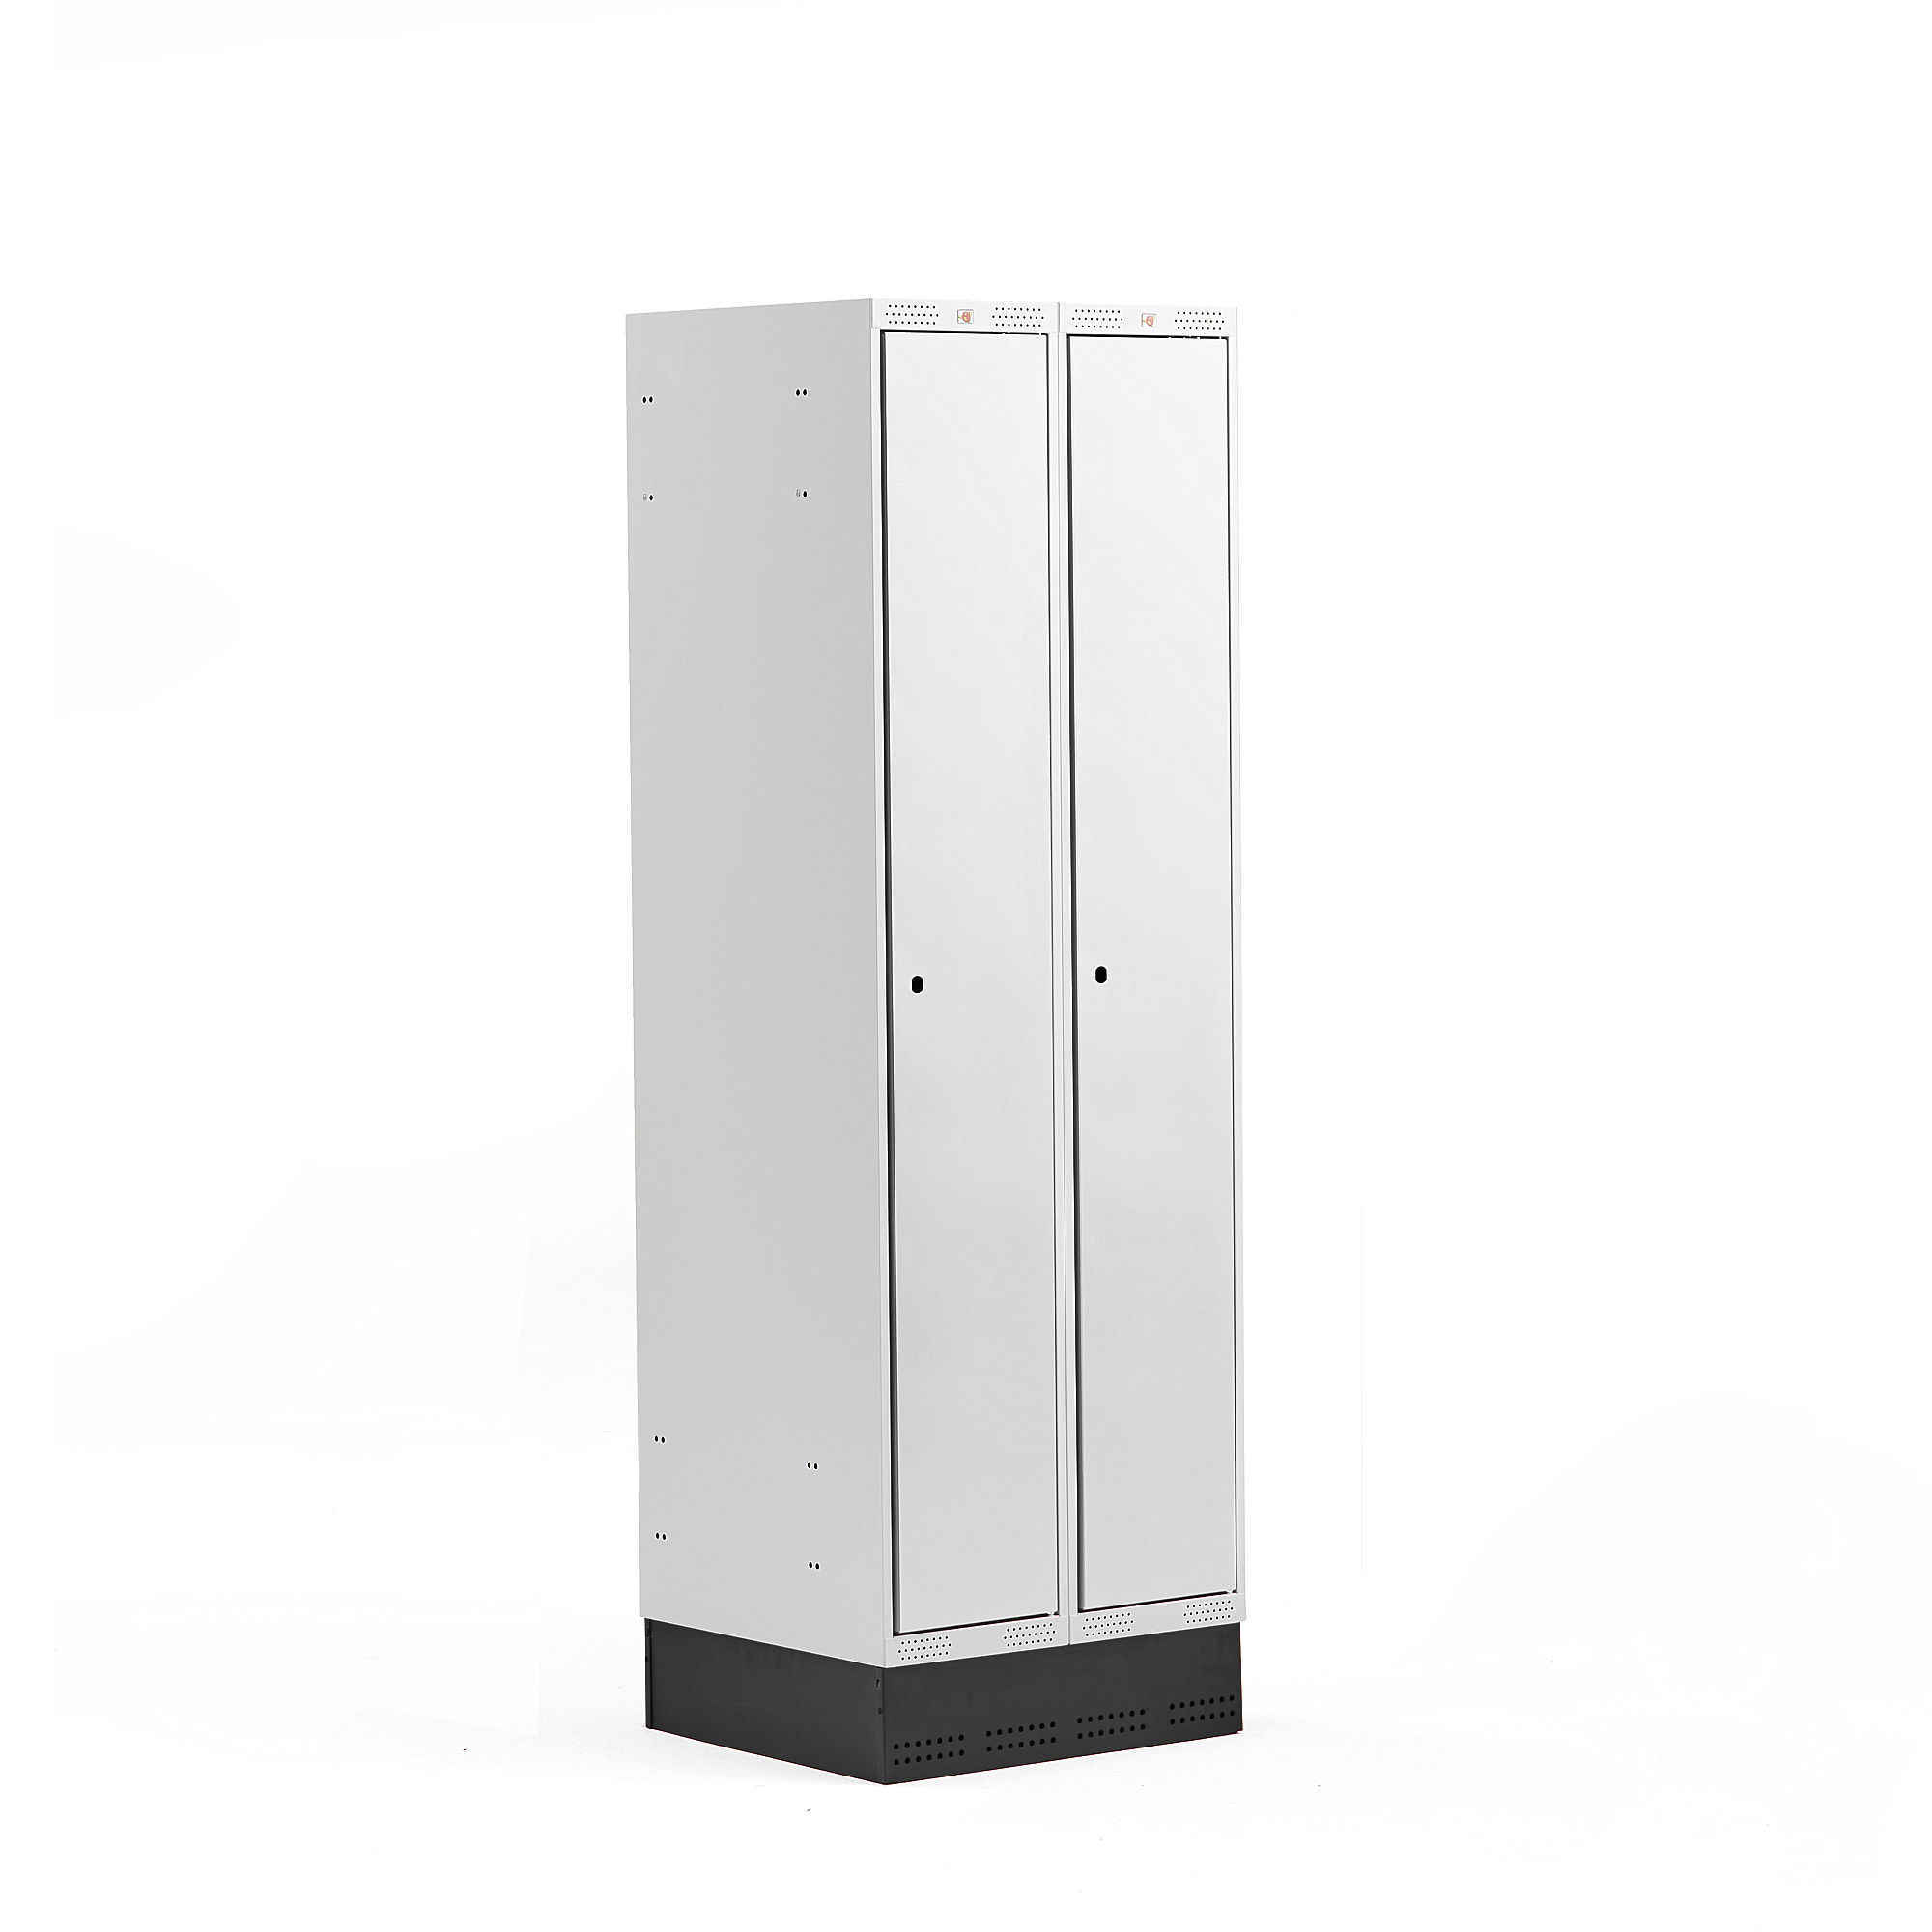 Šatní skříňka CLASSIC, se soklem, 2 sekce, 1890x600x550 mm, šedé dveře